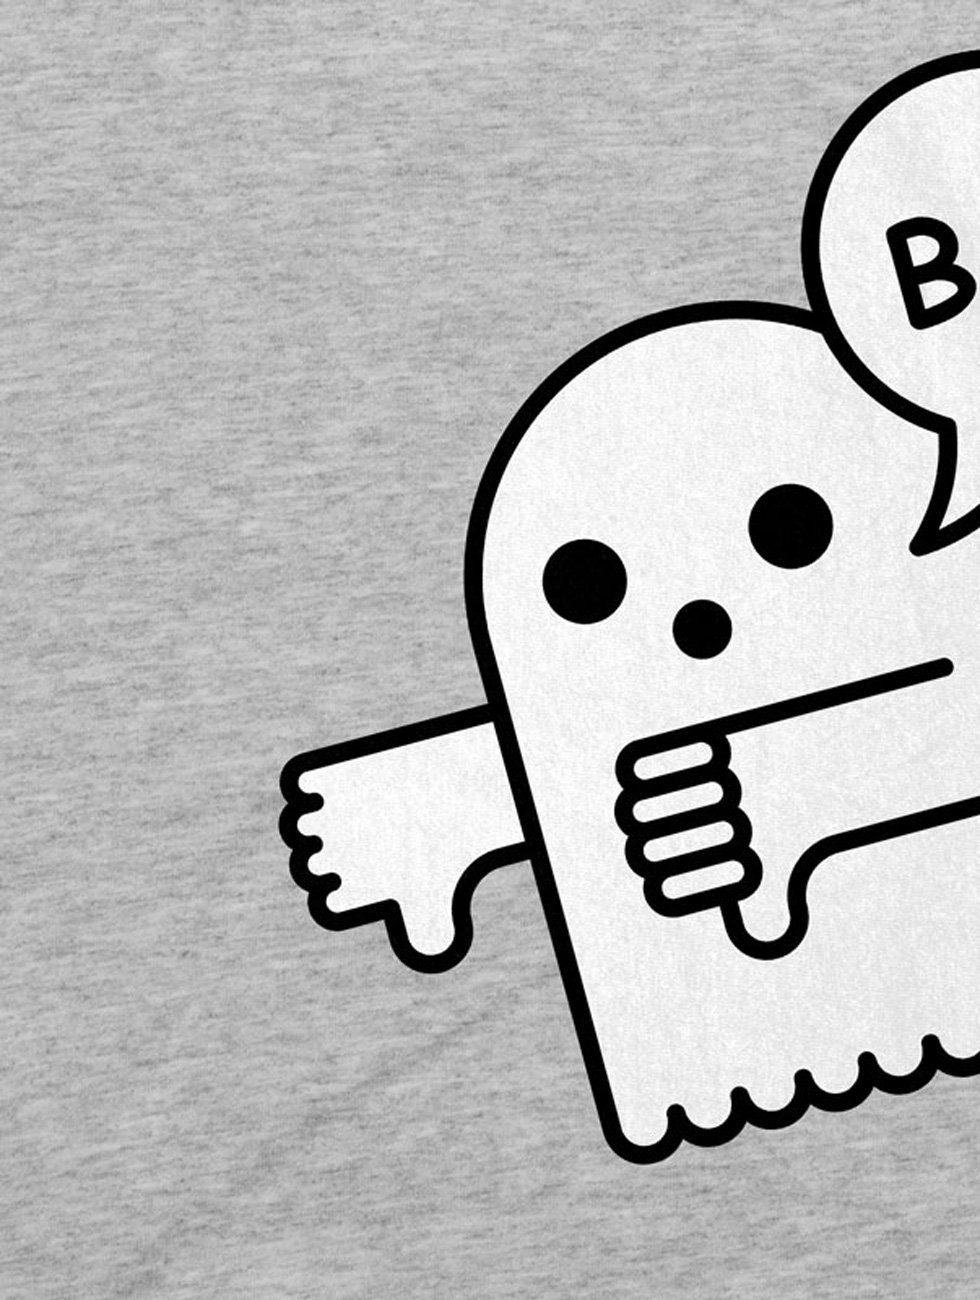 Herren gespenst Helloween Geist style3 Boo Halloween Disapproval Print-Shirt spuk T-Shirt